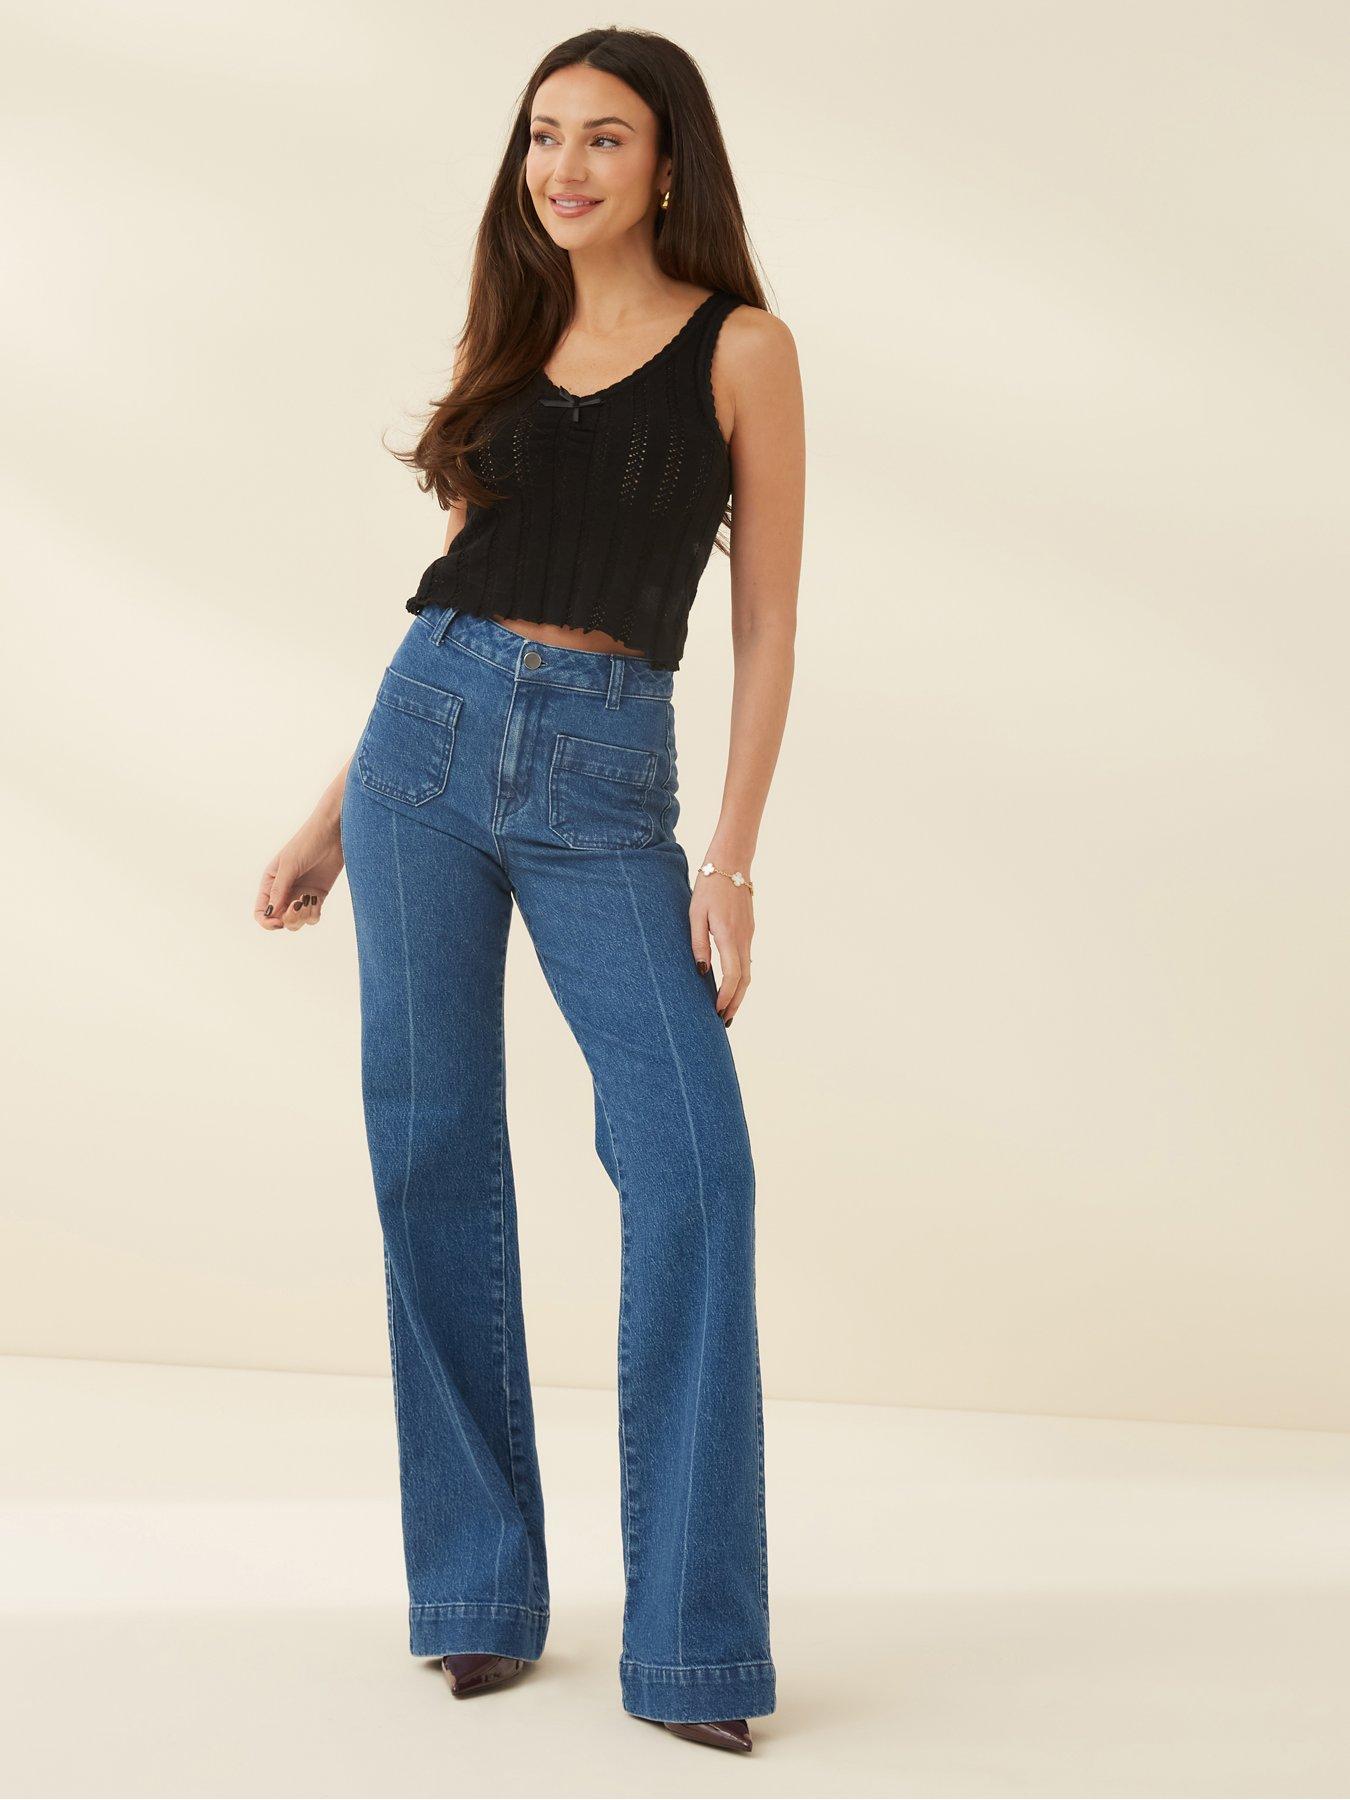 Women's Jeans, Shop Ladies Denim Jeans